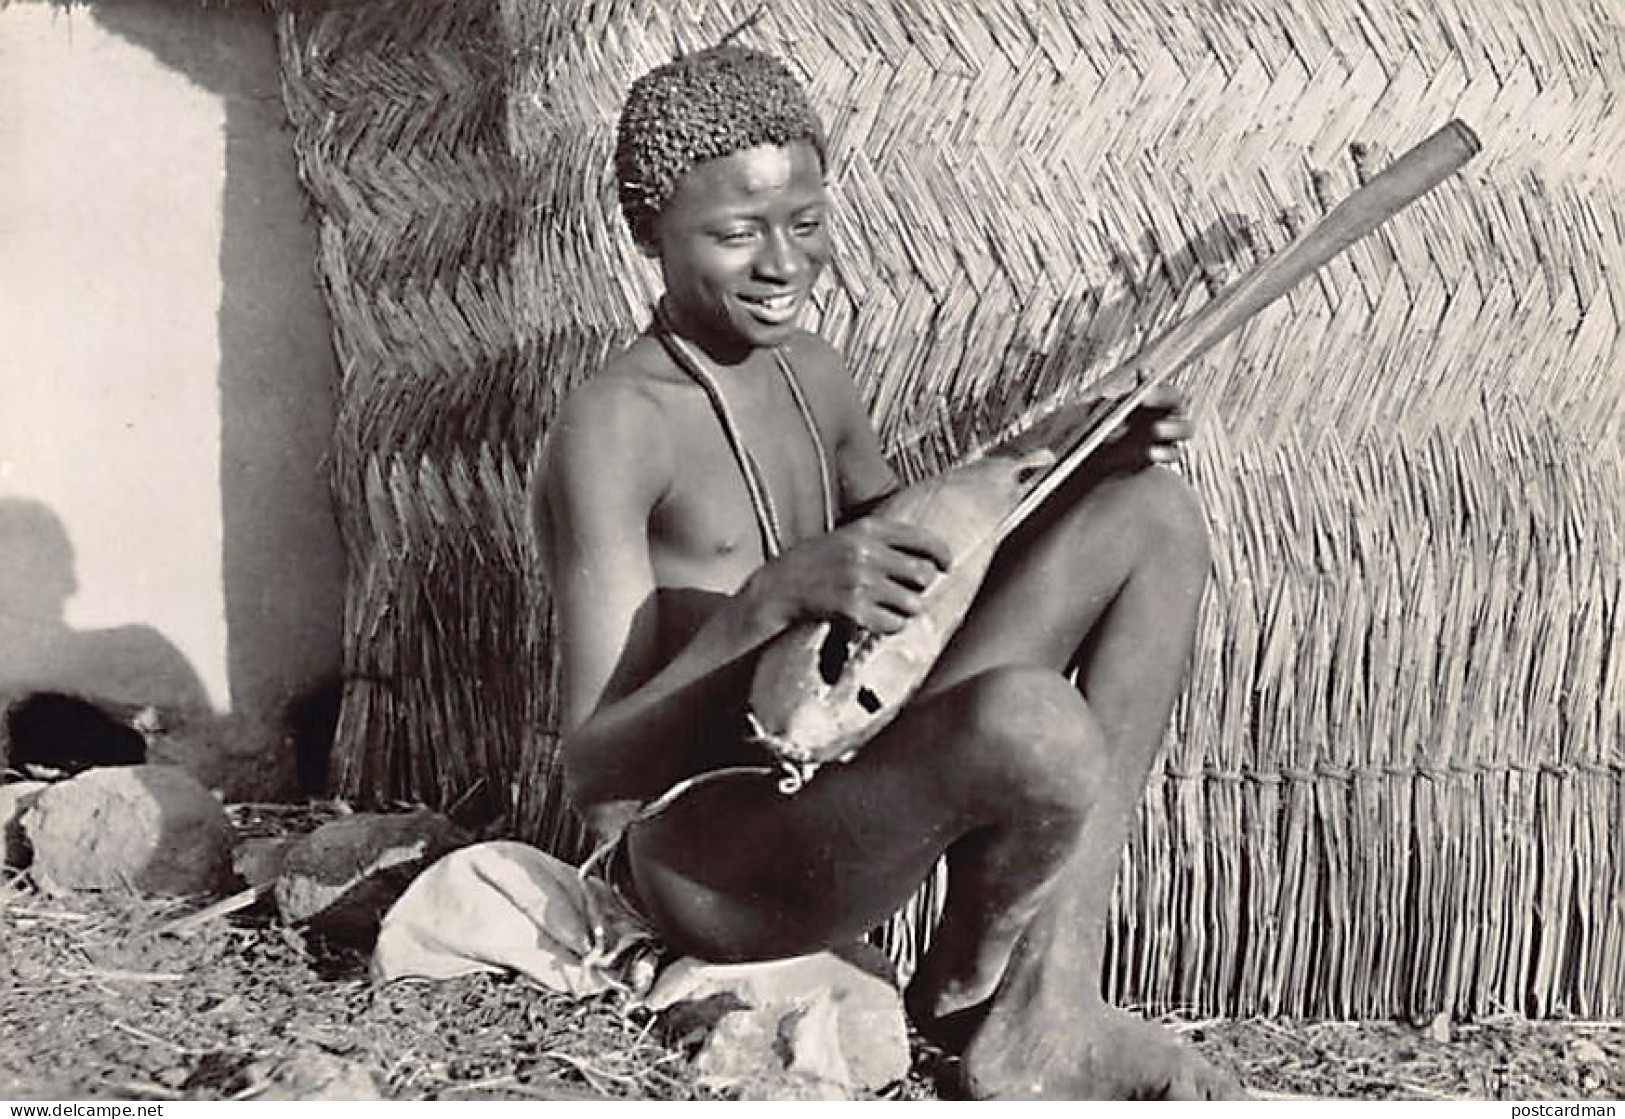 Cameroun - Musicien Fali - TAILLE DE LA CARTE POSTALE 15 Cm. Par 10 Cm. - POSTCARD SIZE 15 Cm. By 10 Cm. (5.9 In By 3.9  - Camerun